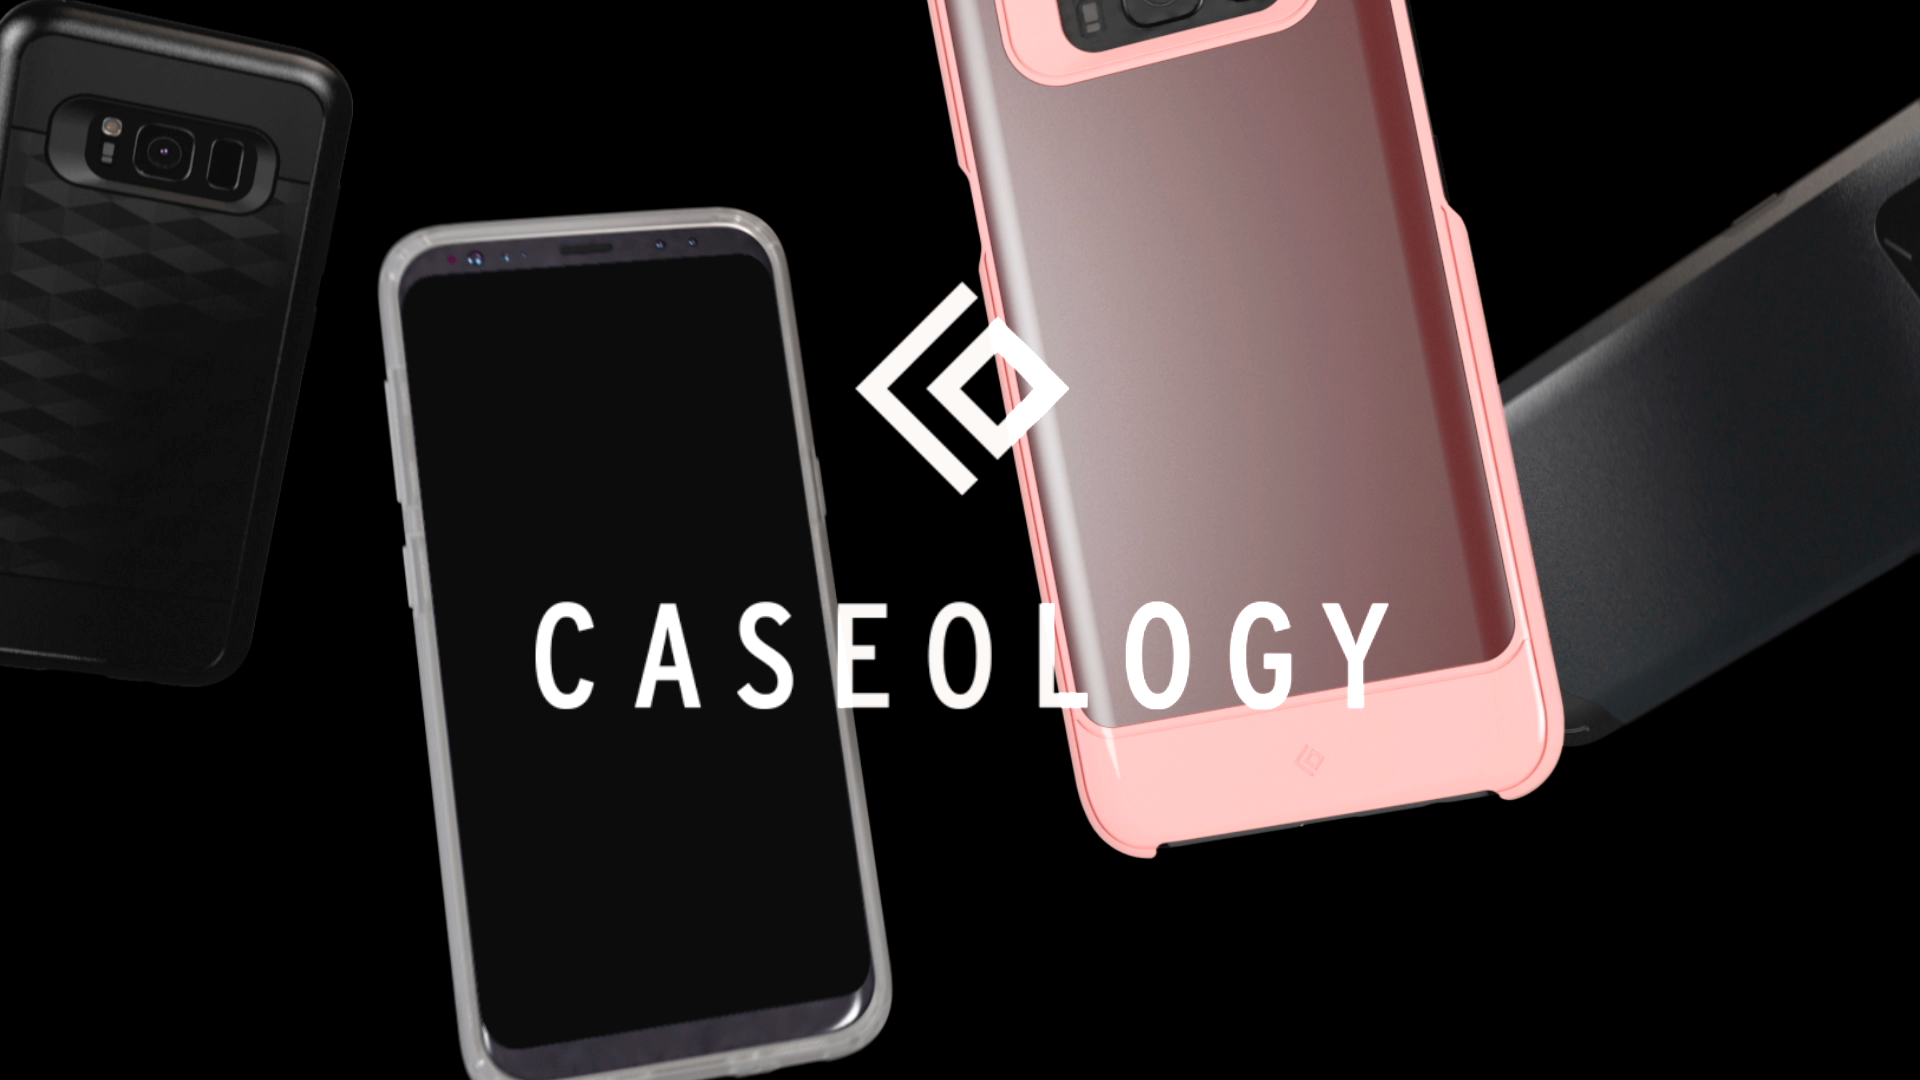 Caseology 30 Second Spot